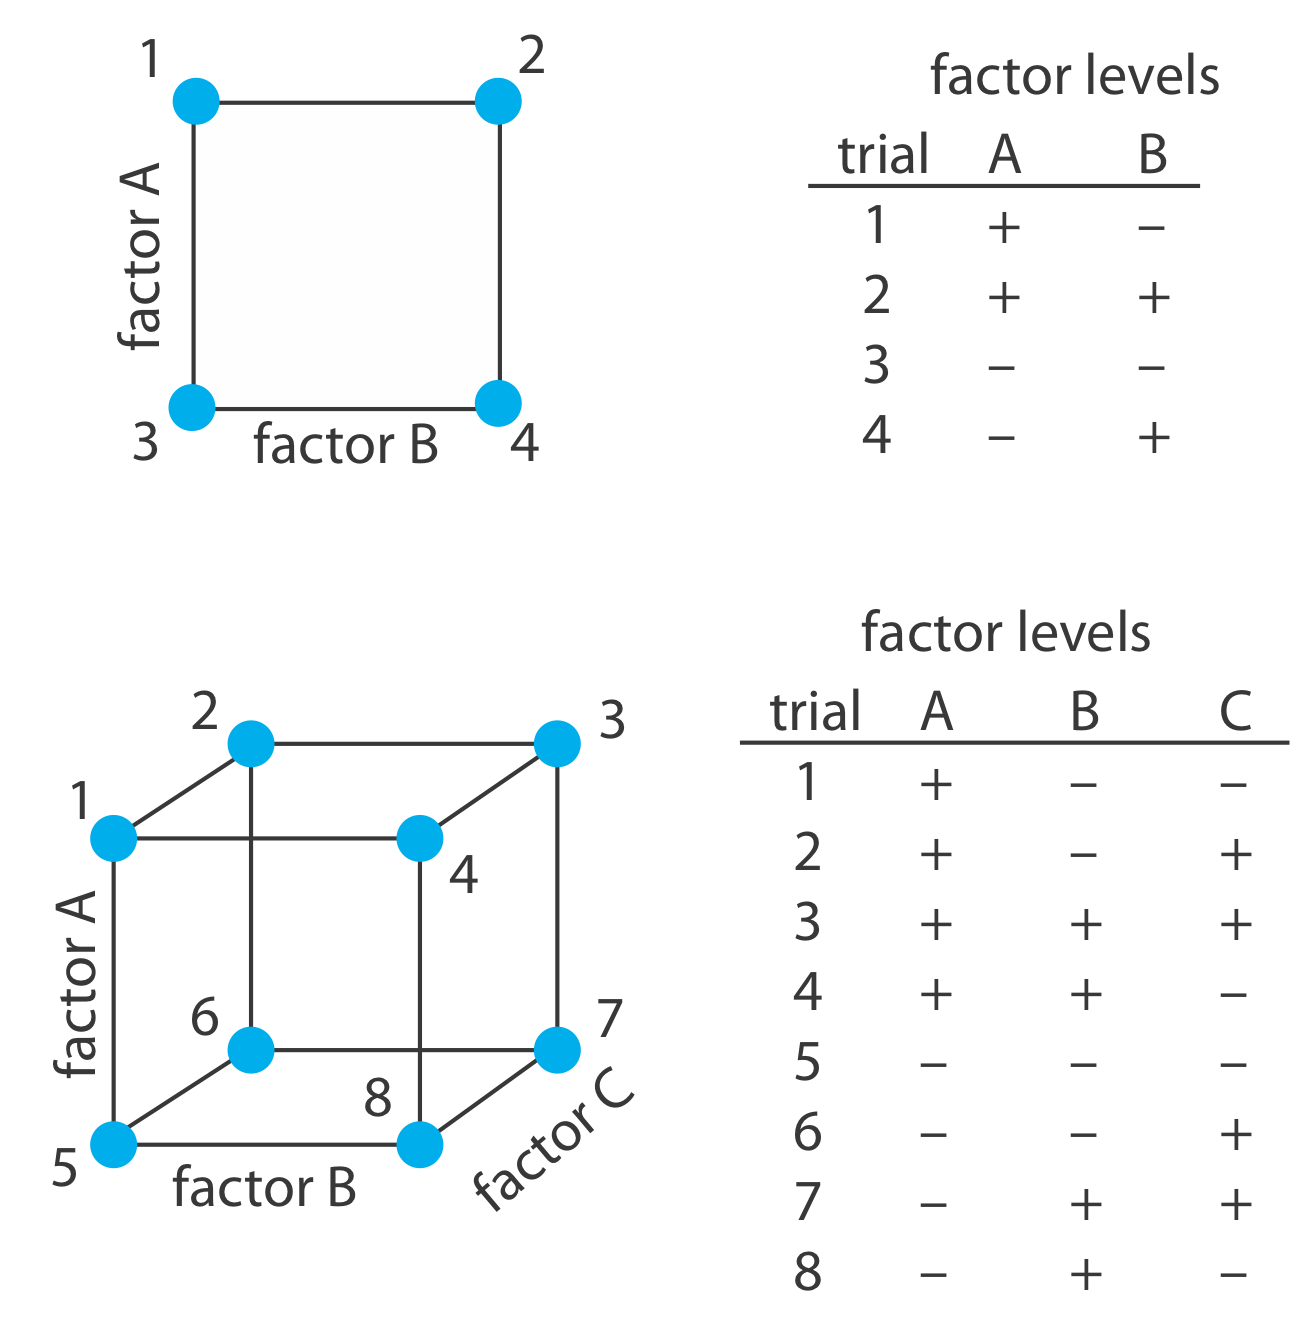 El diseño factorial 2^2 requiere cuatro ensayos, cada uno de los cuales consiste en una combinación diferente de niveles de factor A y B. El diseño factorial 2^3 tiene 8 ensayos, nuevamente, cada uno compuesto por diferentes niveles de factores A, B y C.